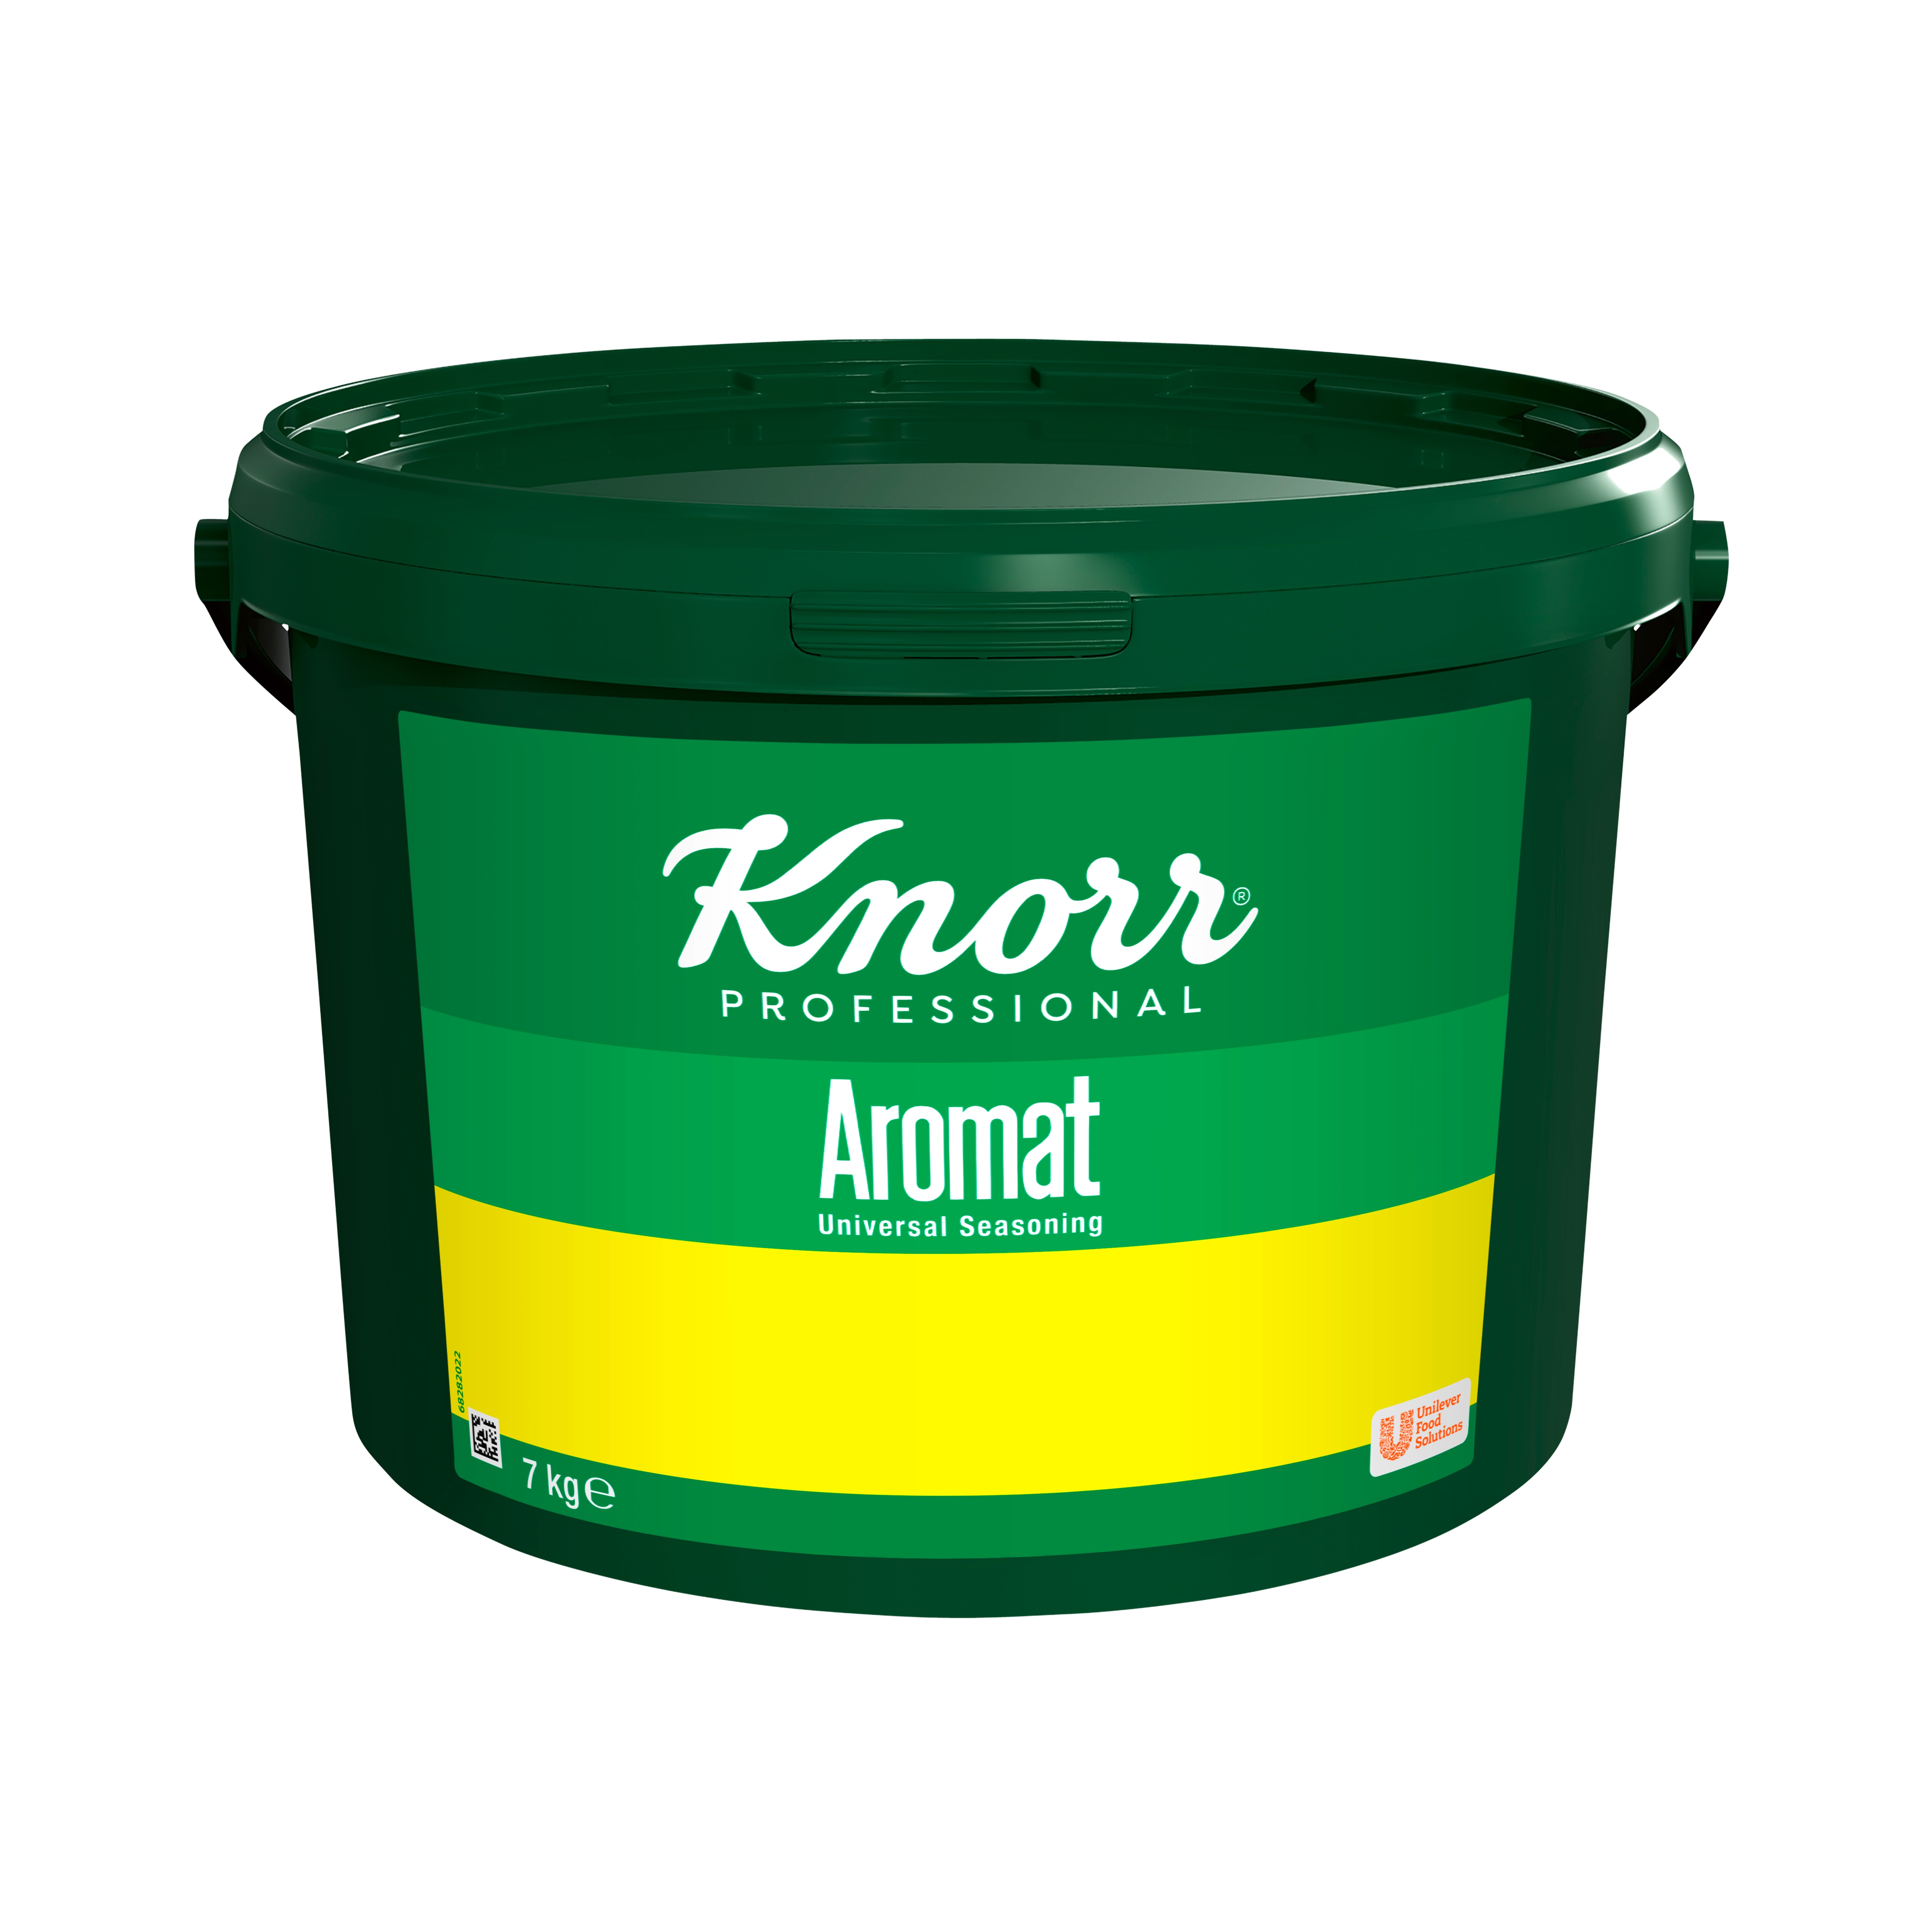 Knorr Aromat, ekonomiförpackning 1 x 7 kg - 